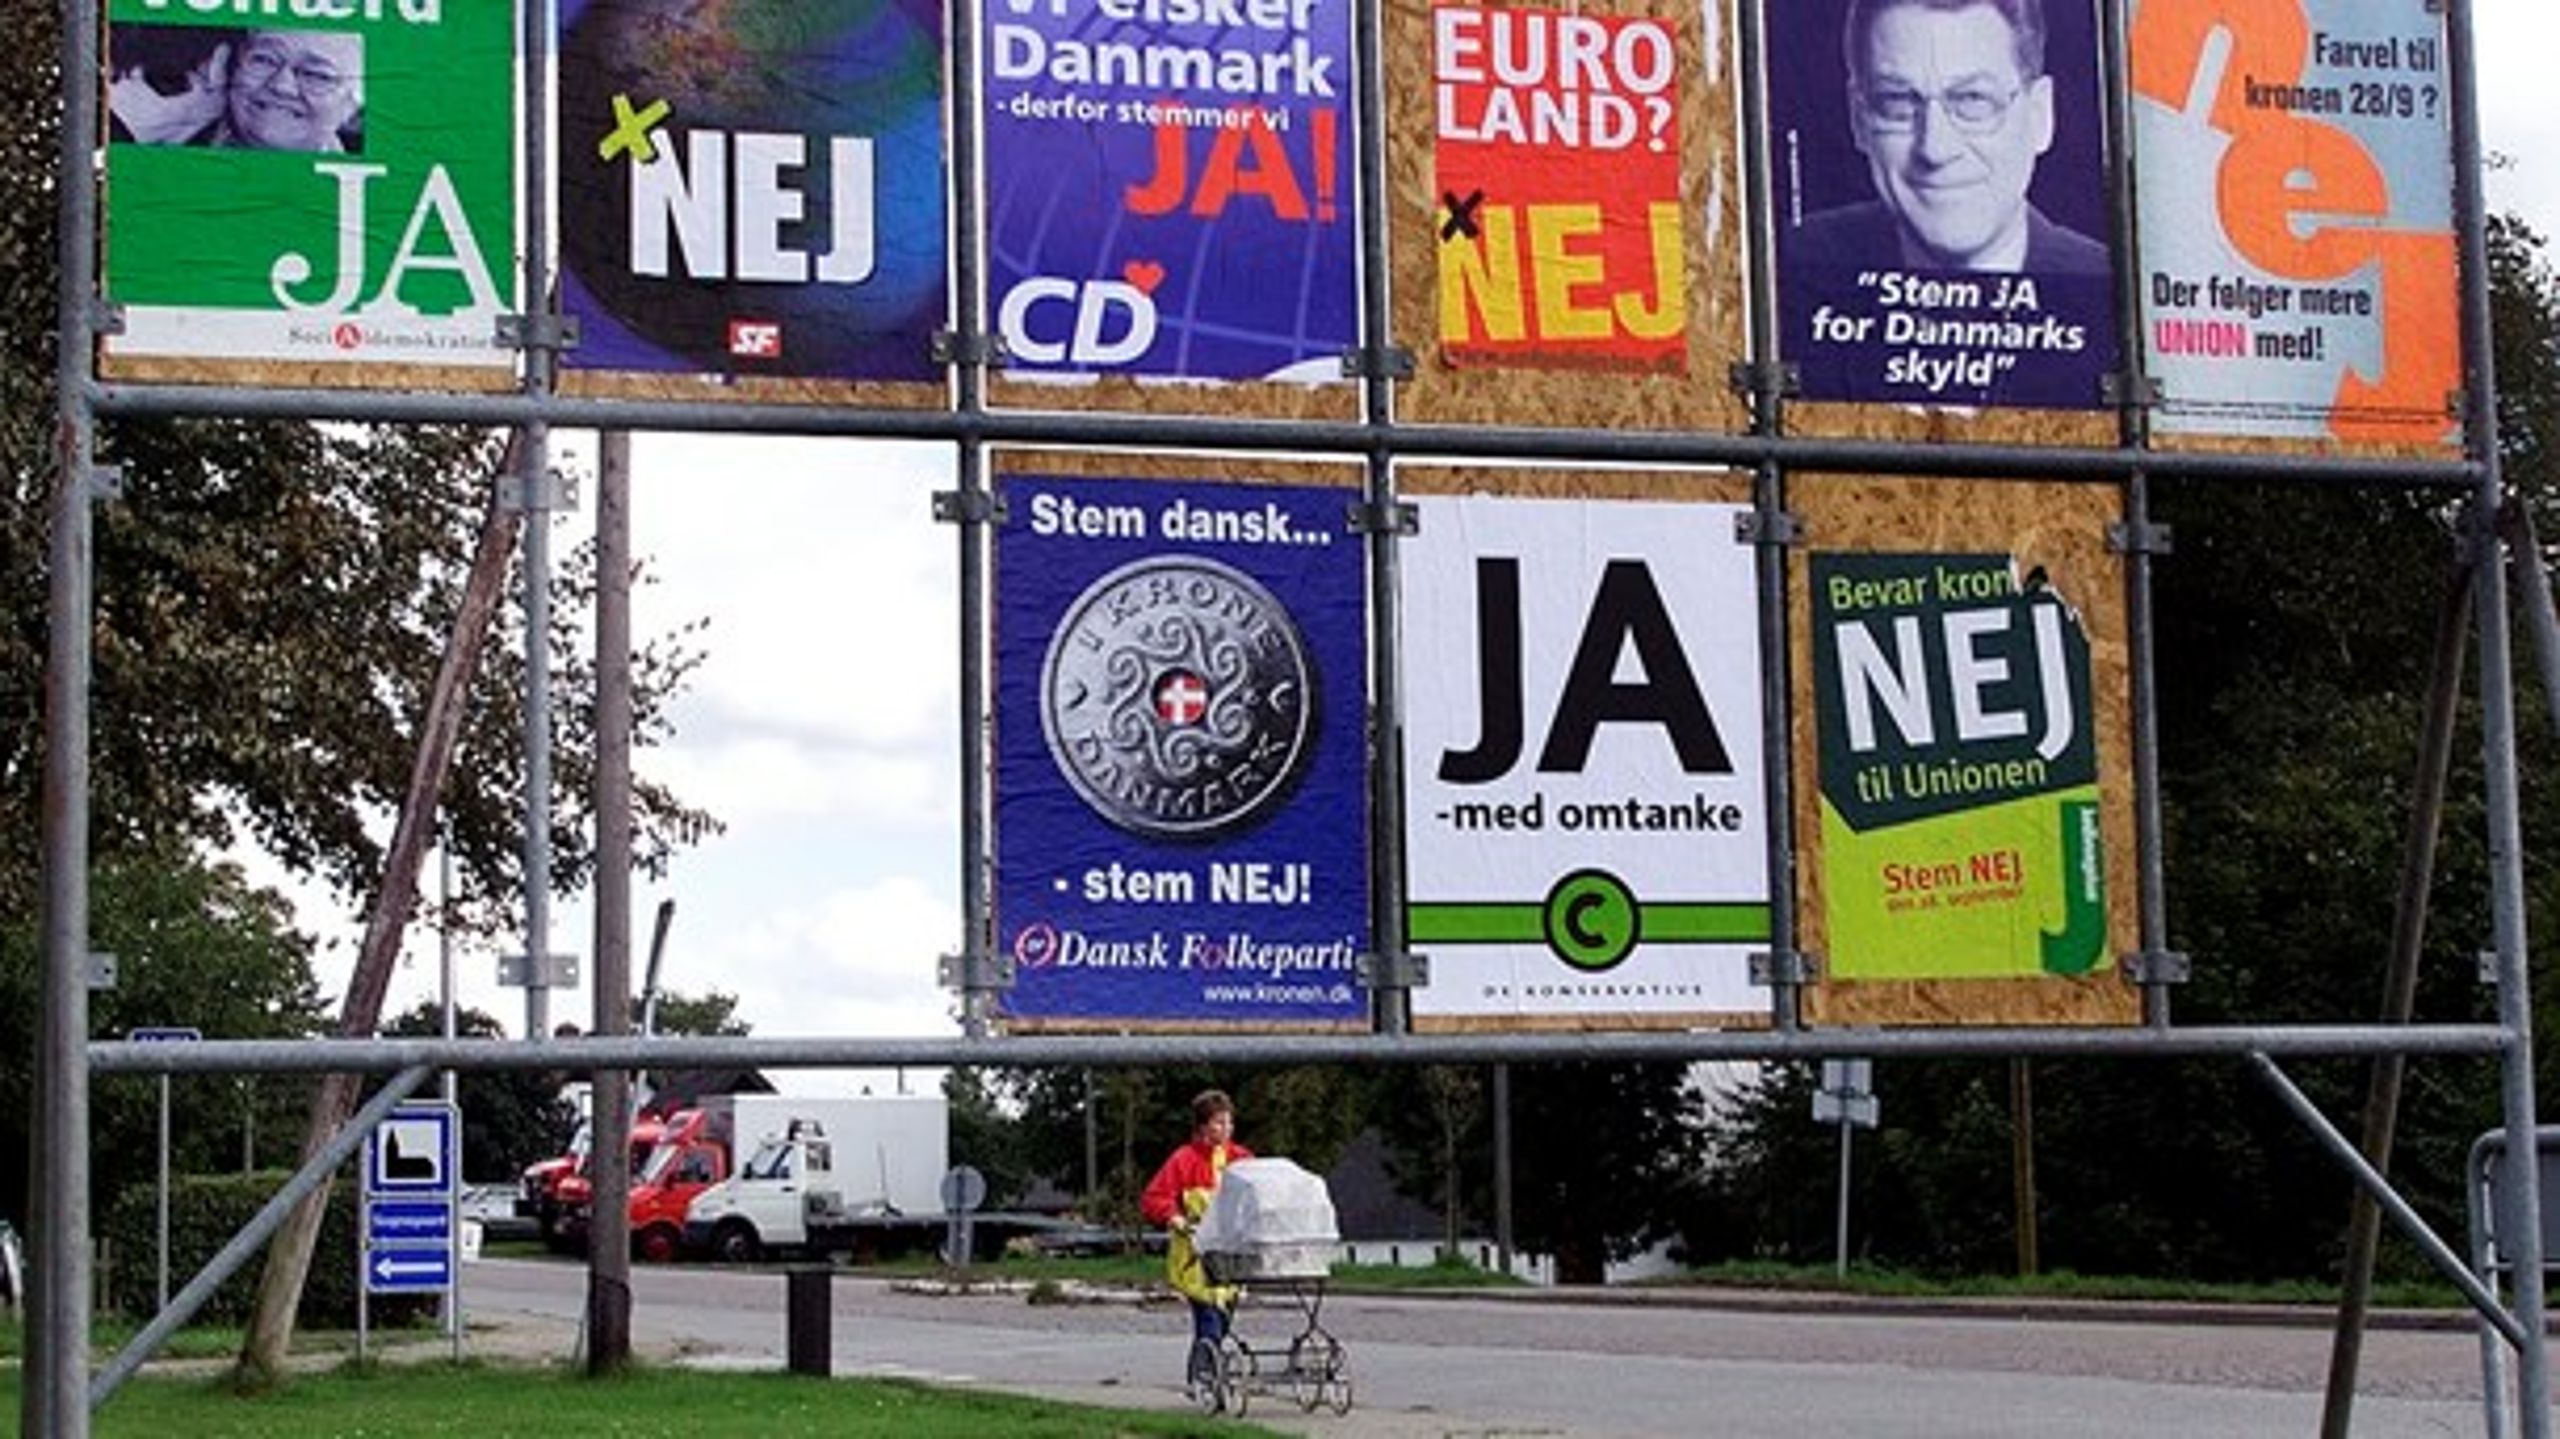 Vælgerne stemte i 2000 om, hvorvidt Danmark skulle tilslutte sig eurovalutaen. Resultatet blev et nej med 53,2 procent af stemmerne.